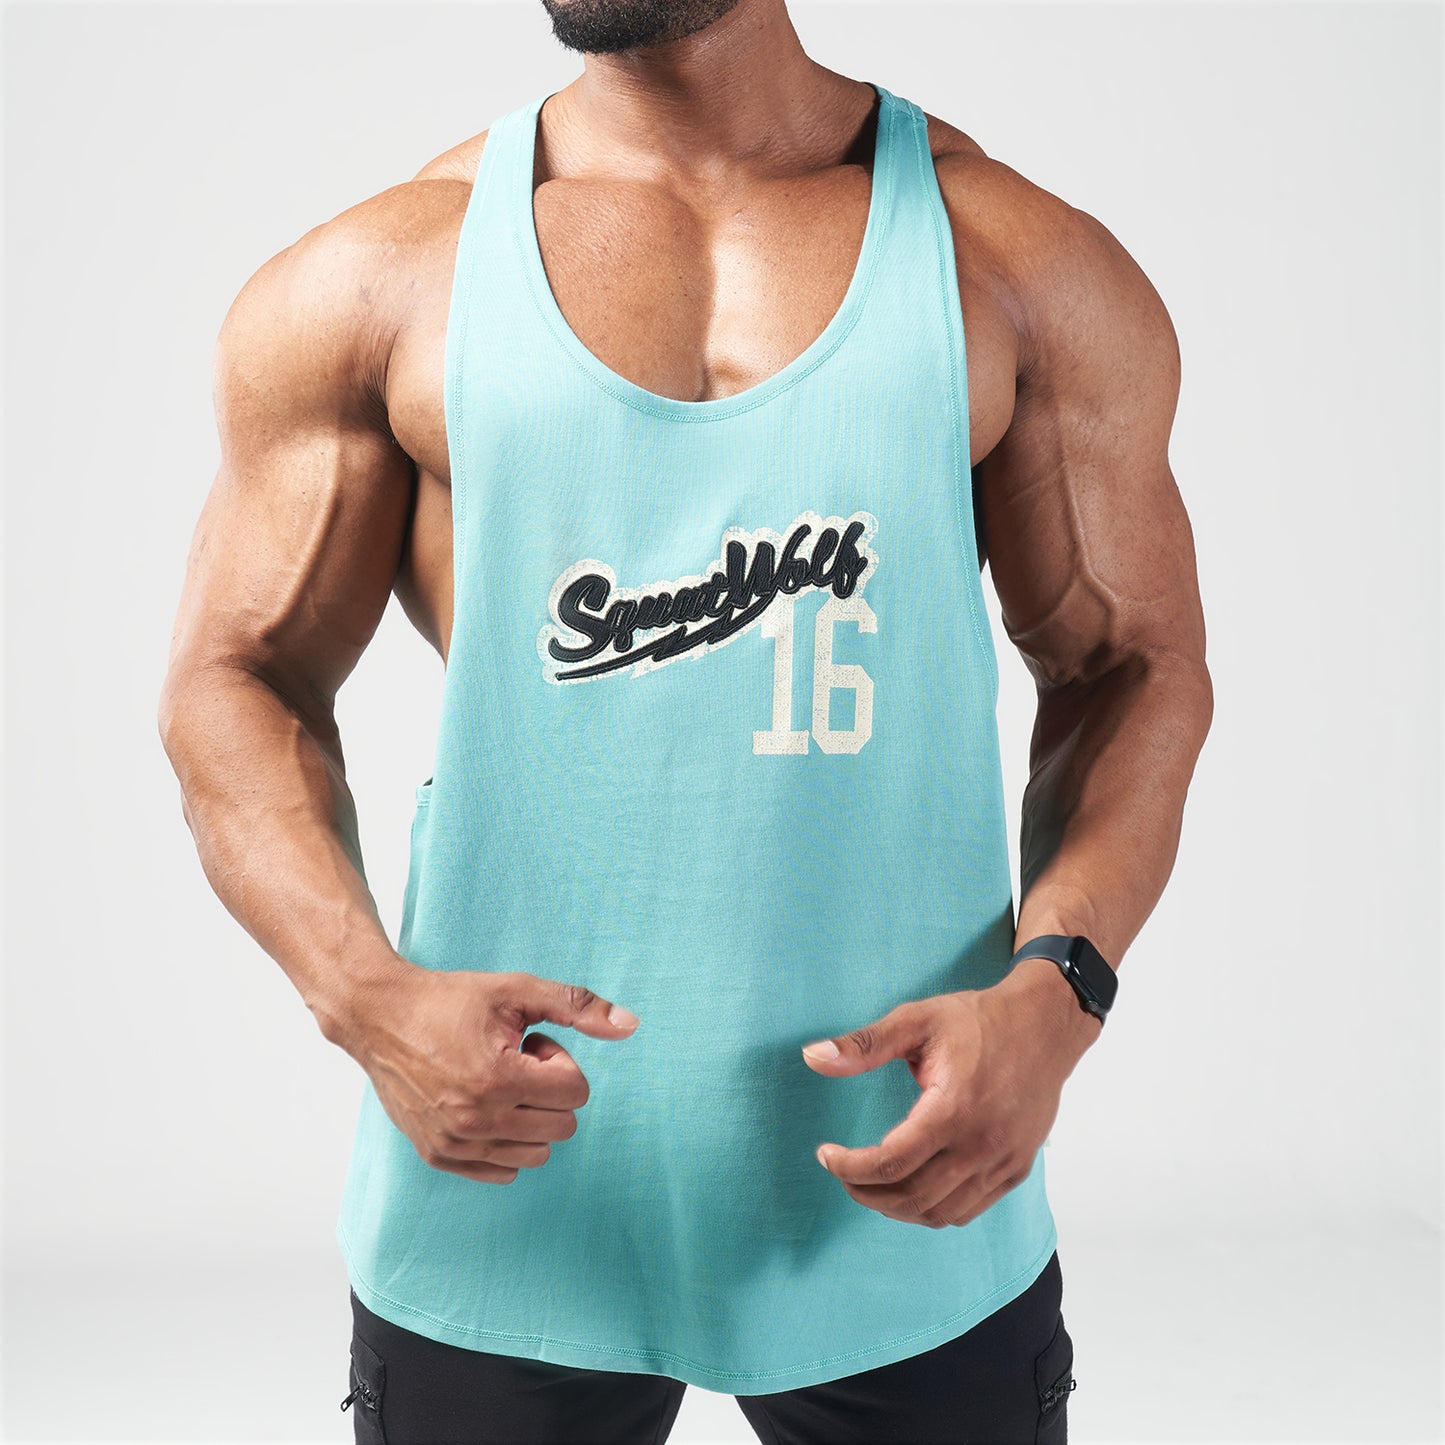 squatwolf-gym-wear-golden-era-vintage-stringer-lagoon-stringer-vests-for-men